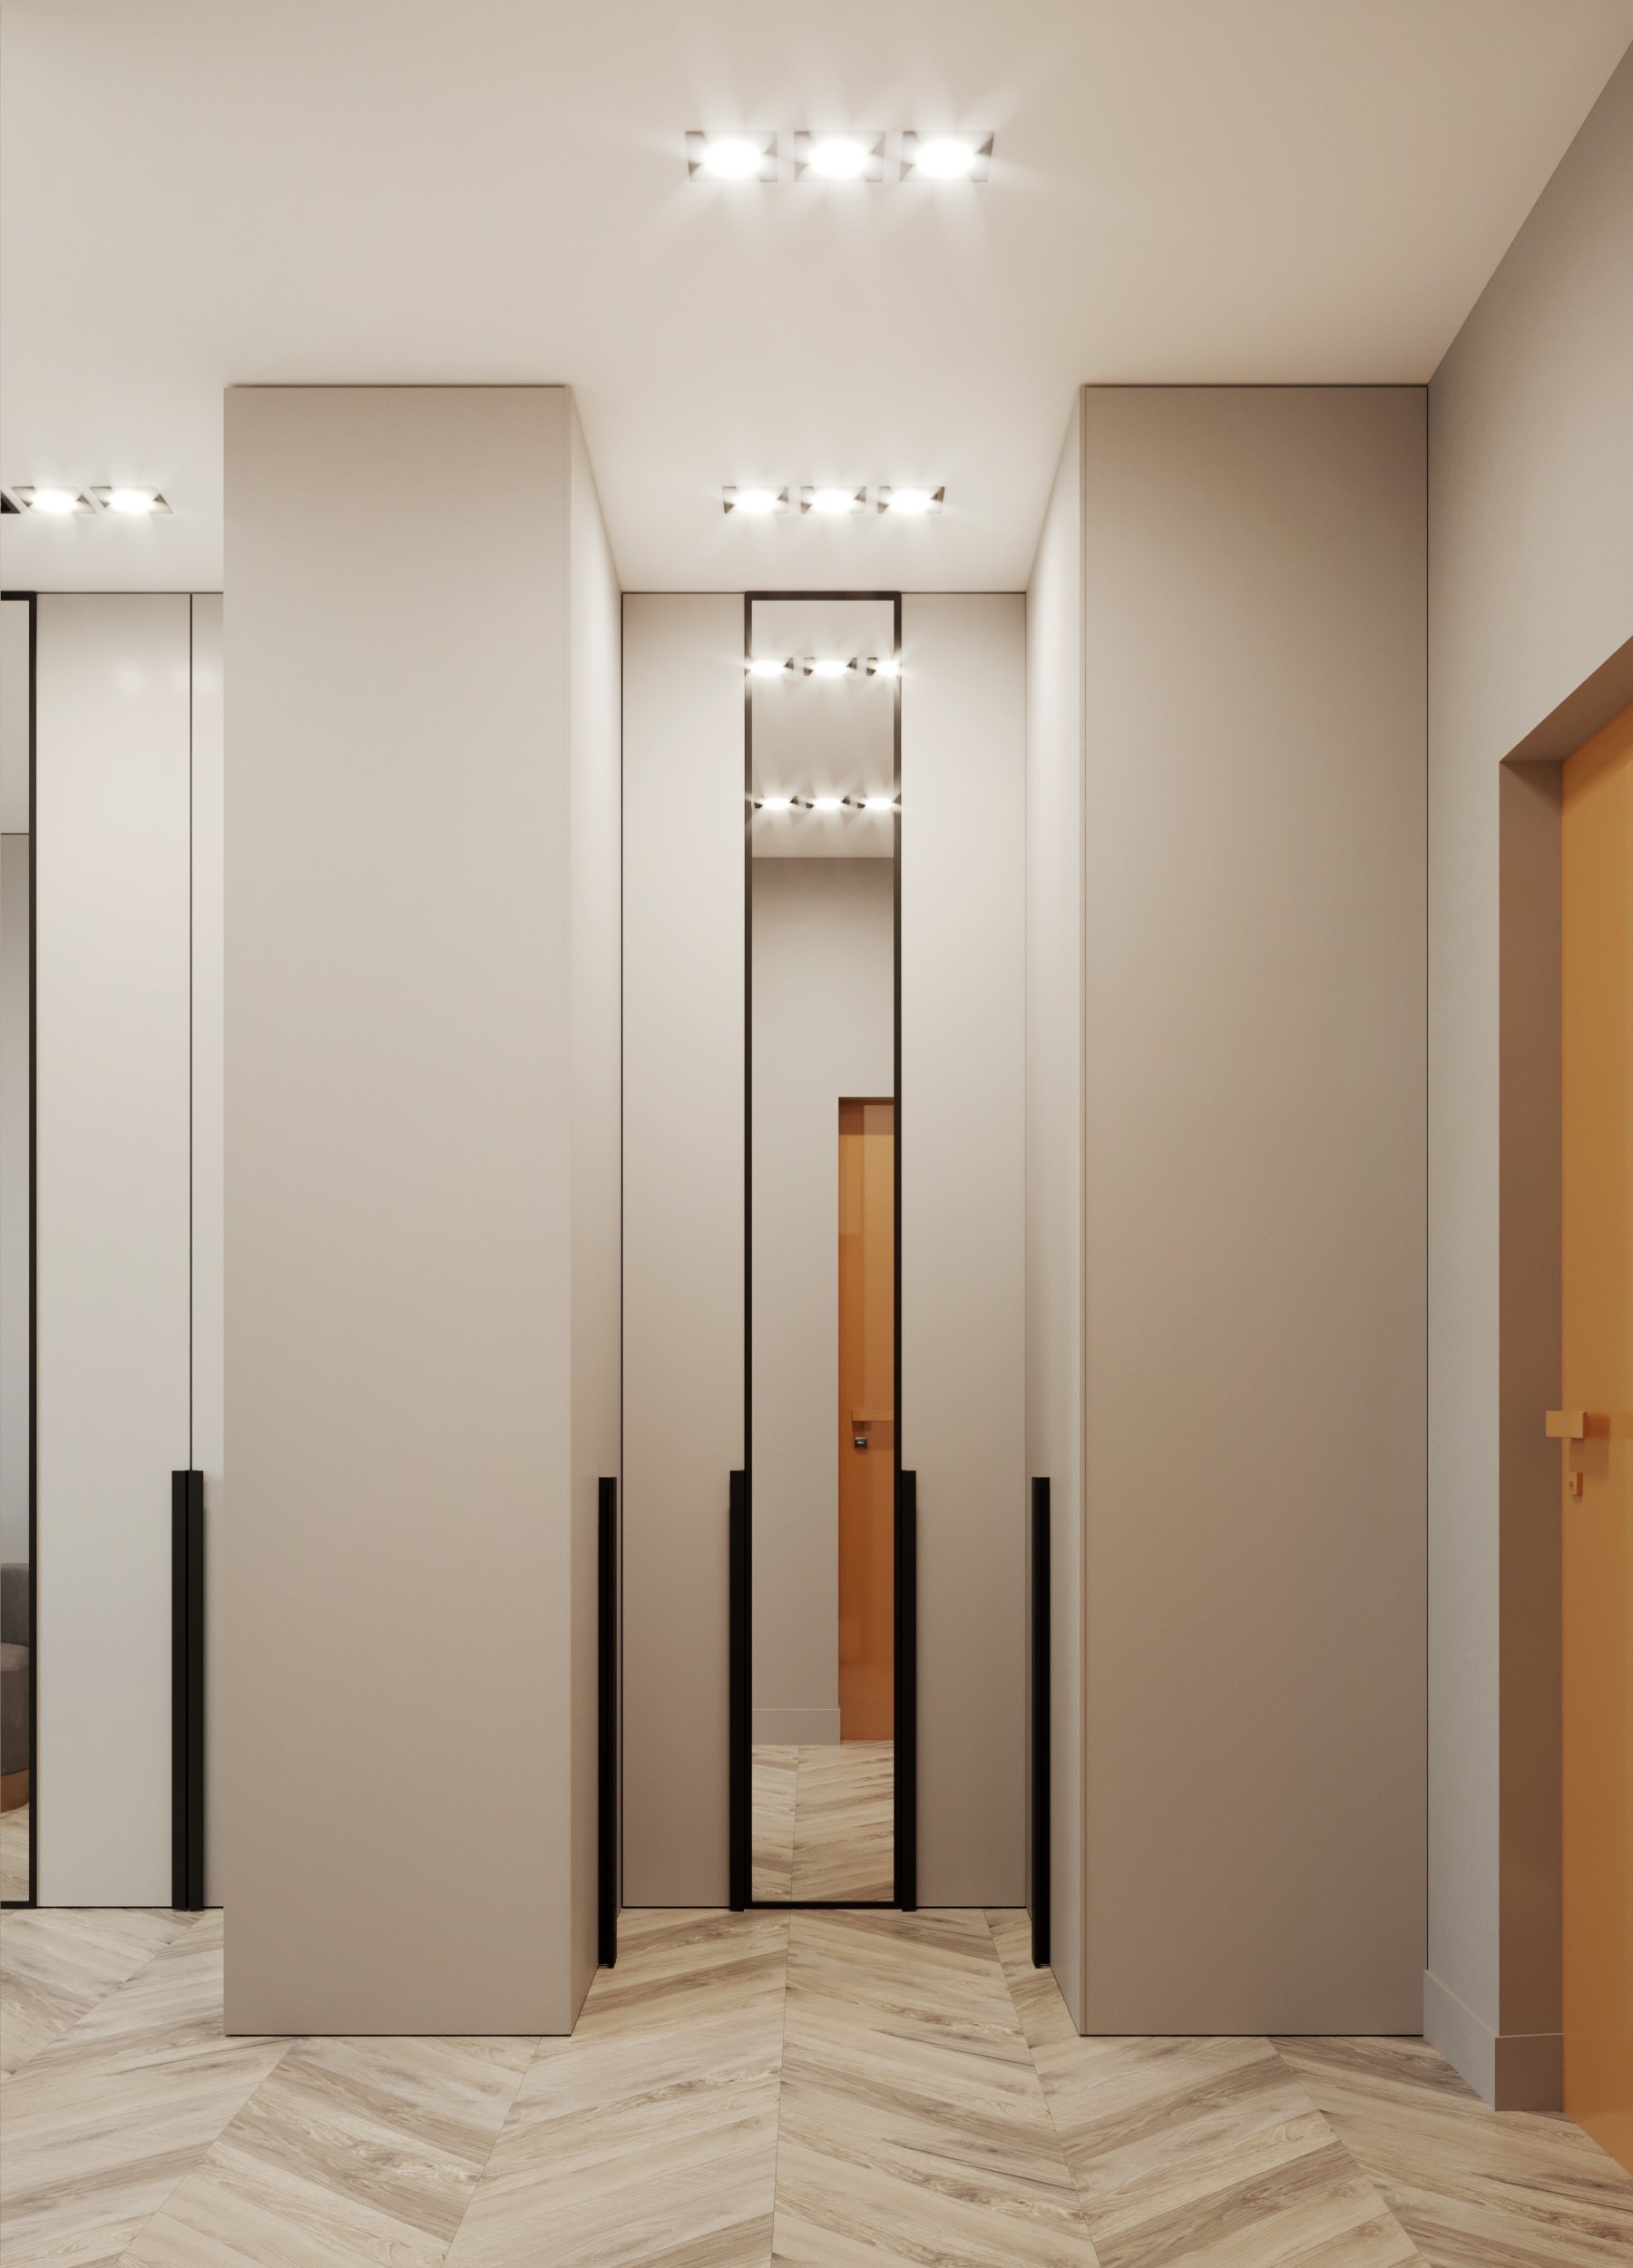 Интерьер коридора cветовыми линиями, рейками с подсветкой, подсветкой настенной, подсветкой светодиодной и с подсветкой в современном стиле